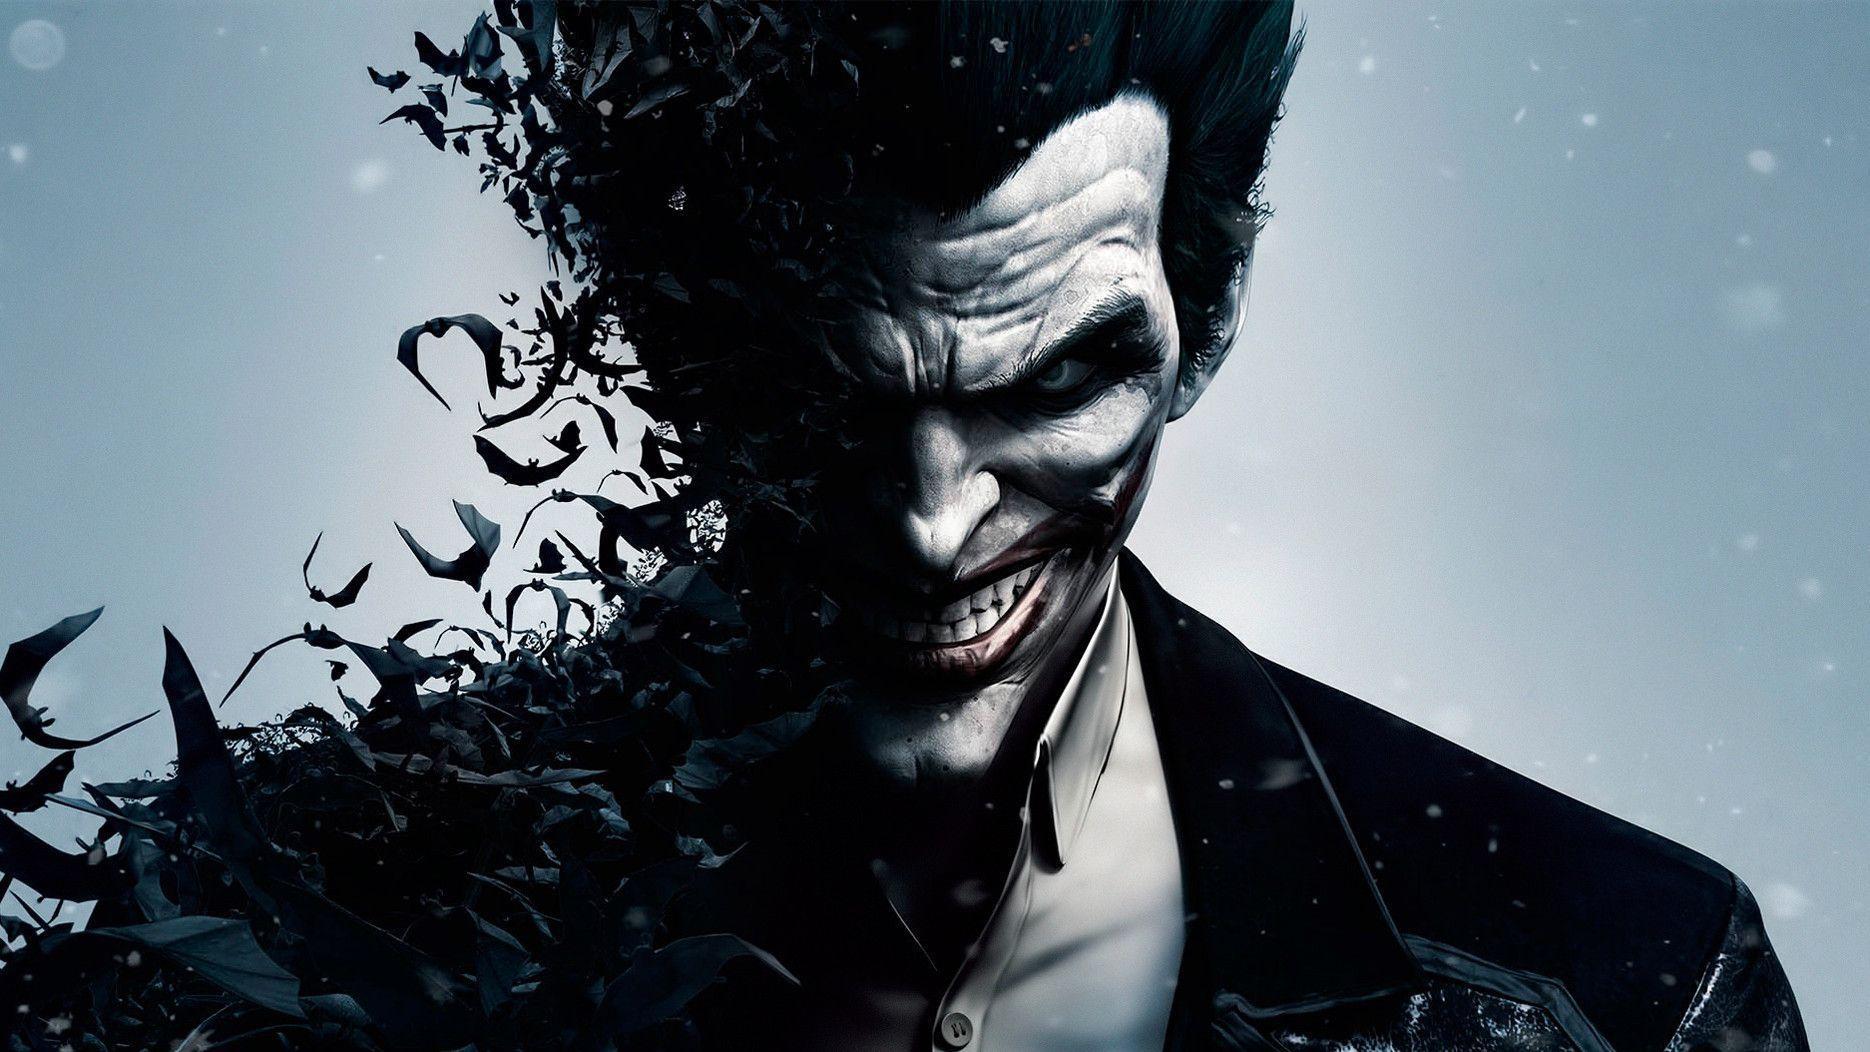 image For > Batman Scary Joker